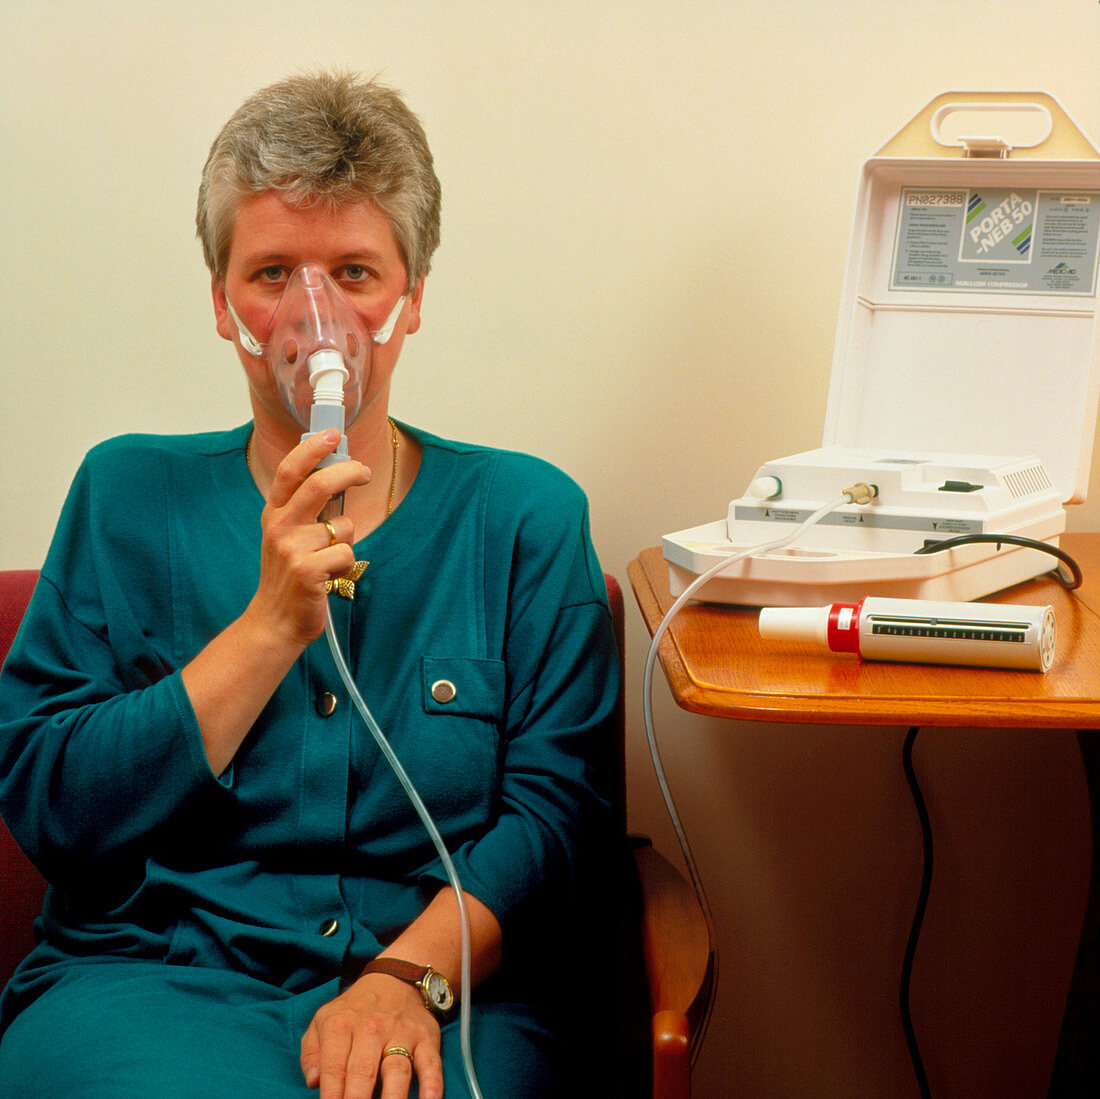 Asthma sufferer using nebulizer